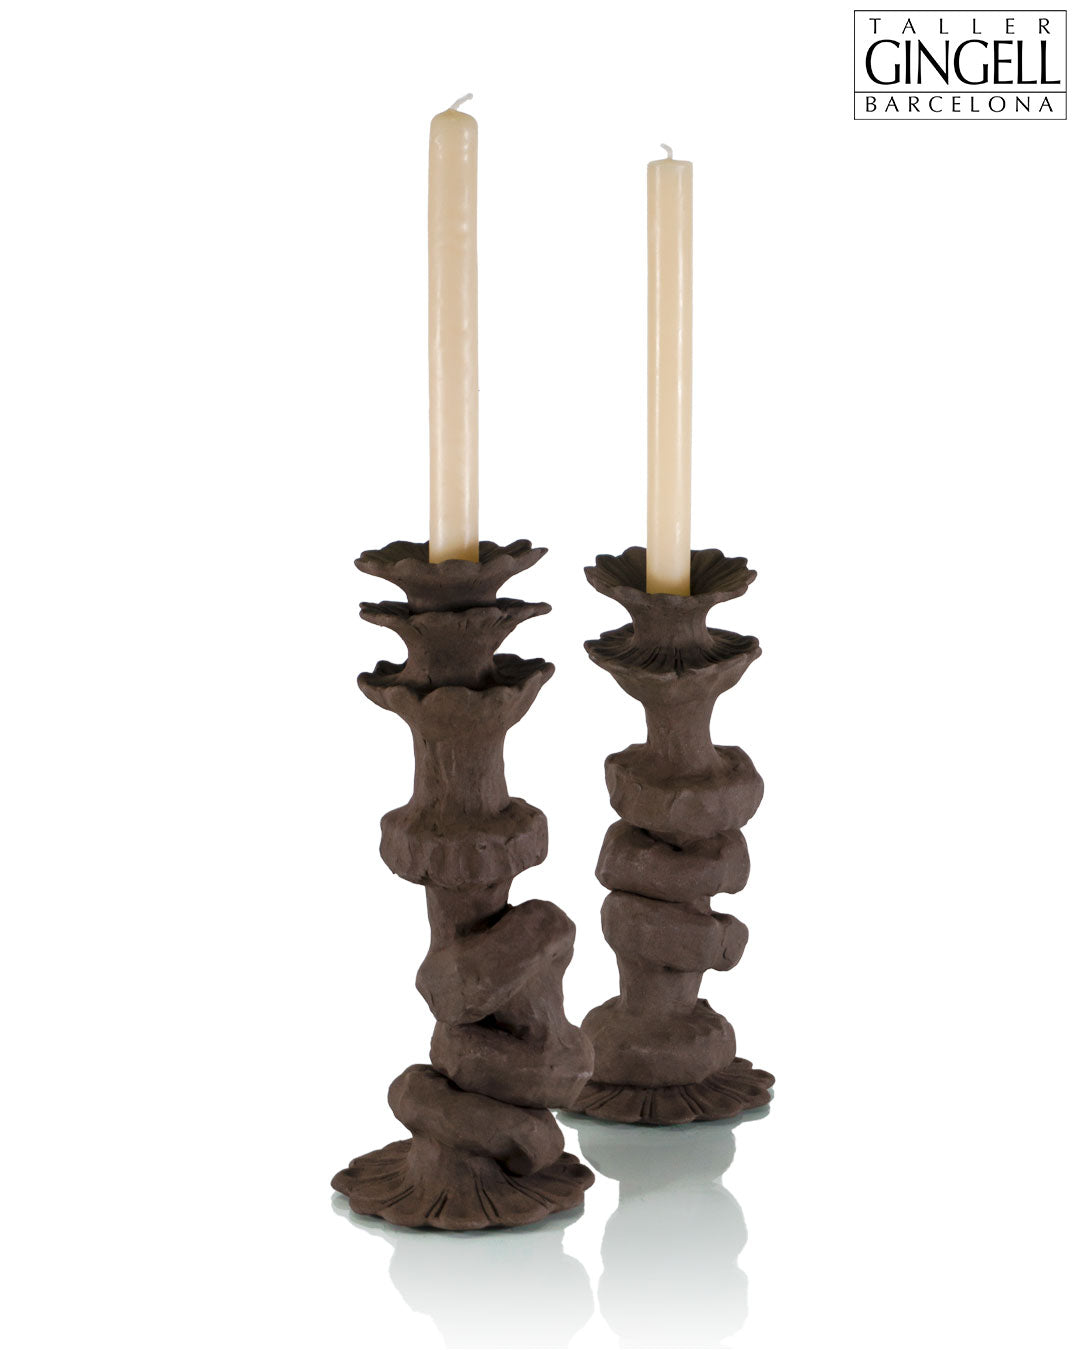 Porta espelmes de ceràmica (32 cm)